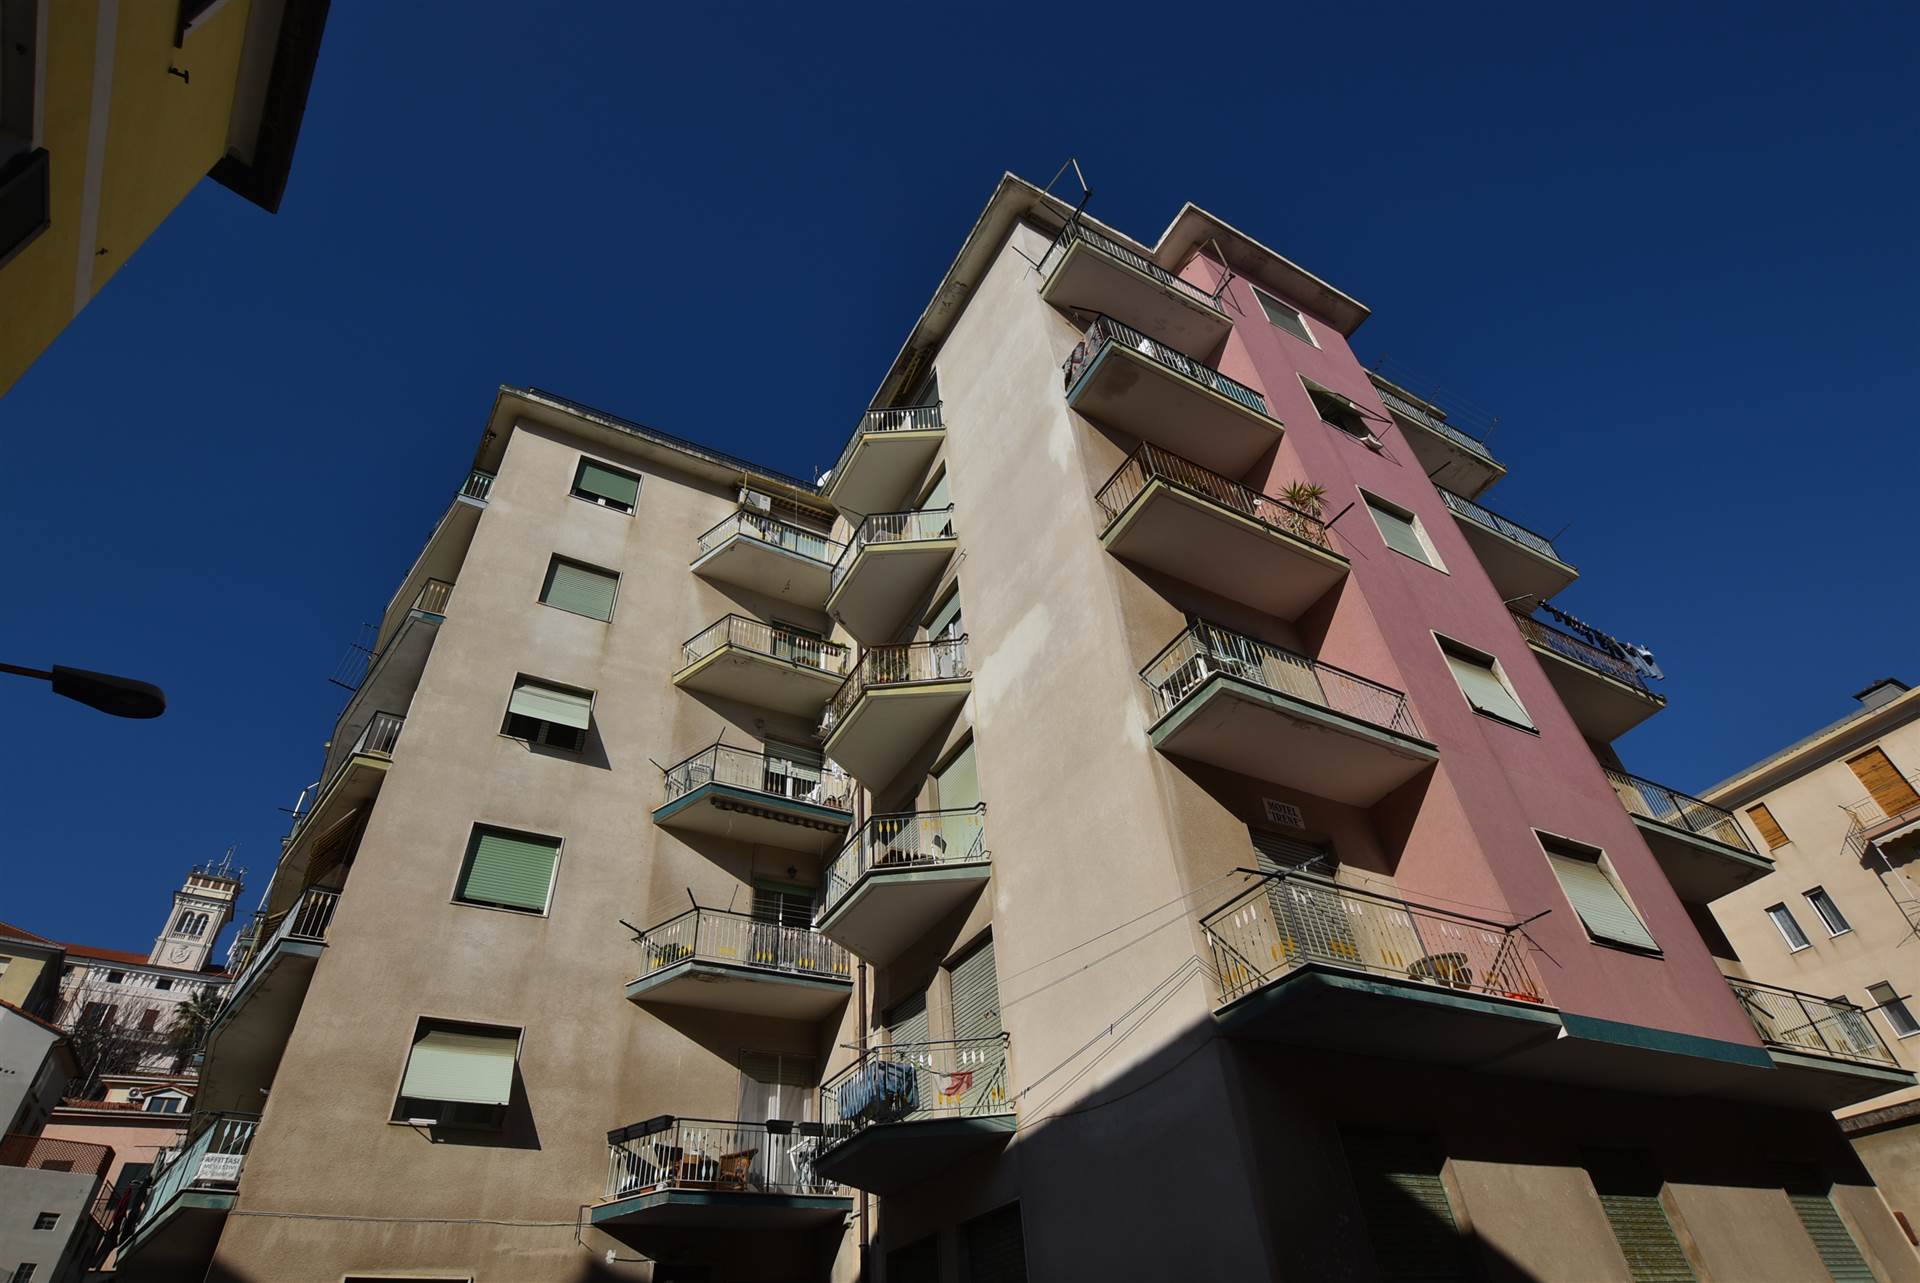 Proponiamo in vendita in esclusiva alloggio di ampia metratura a Borgo Marina a pochi passi dal mare, al terzo piano servito di ascensore, formato di 